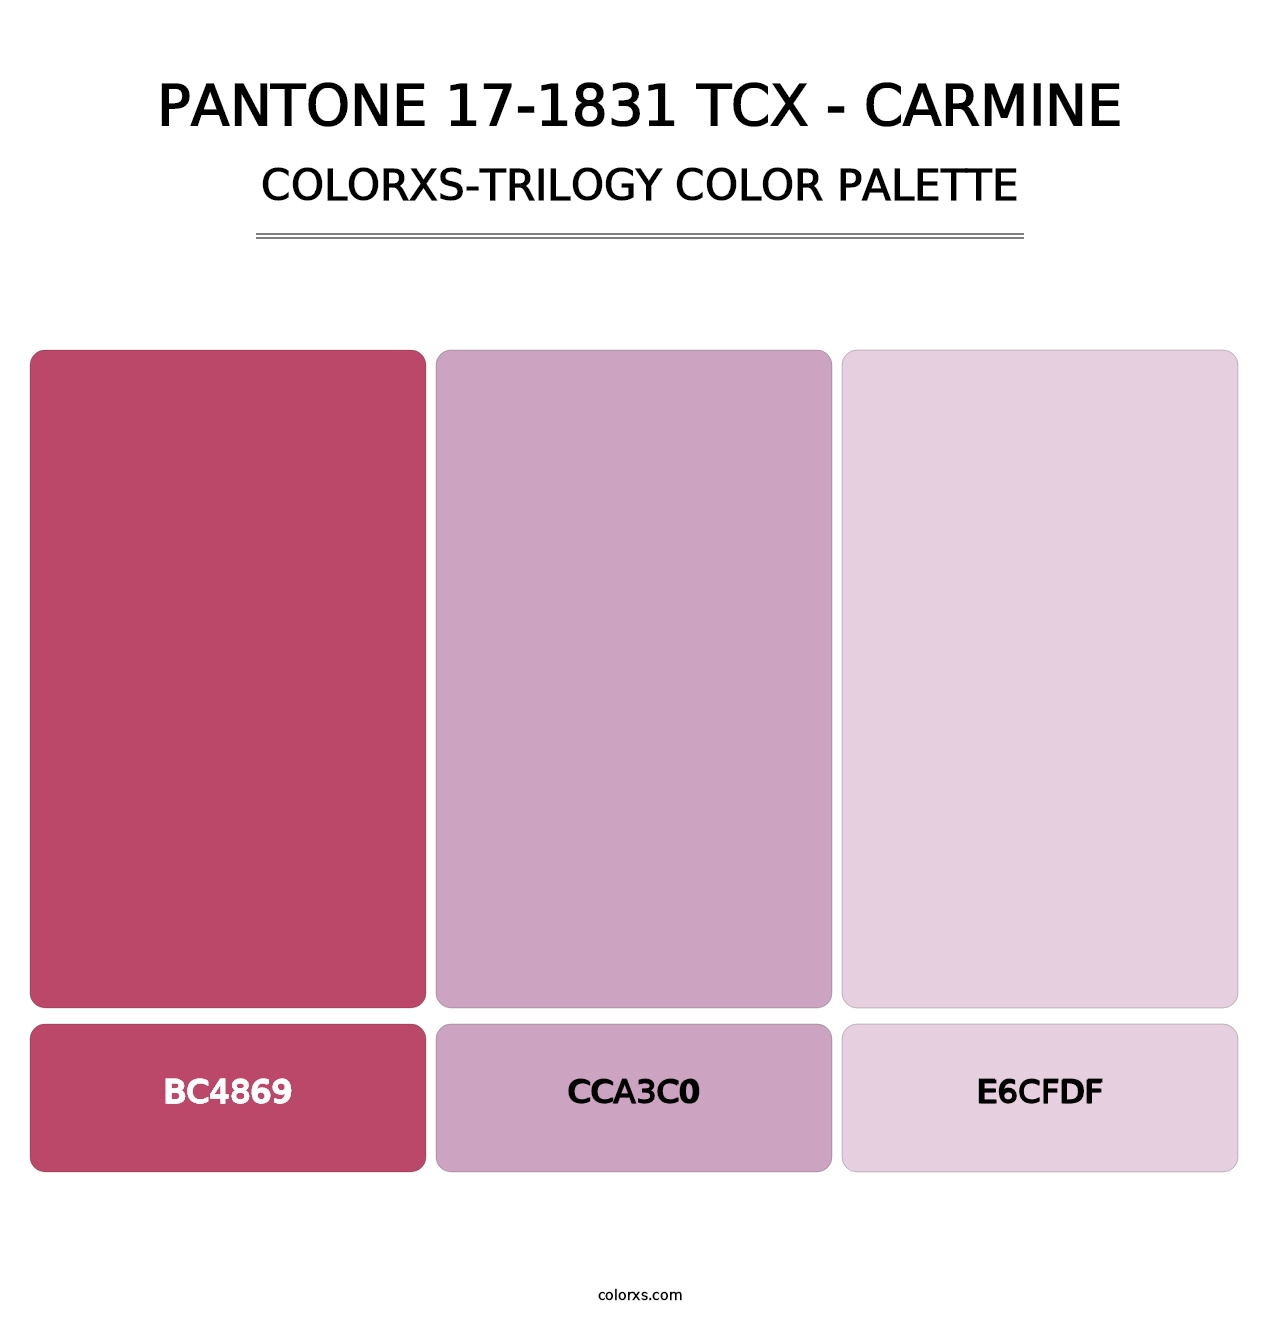 PANTONE 17-1831 TCX - Carmine - Colorxs Trilogy Palette